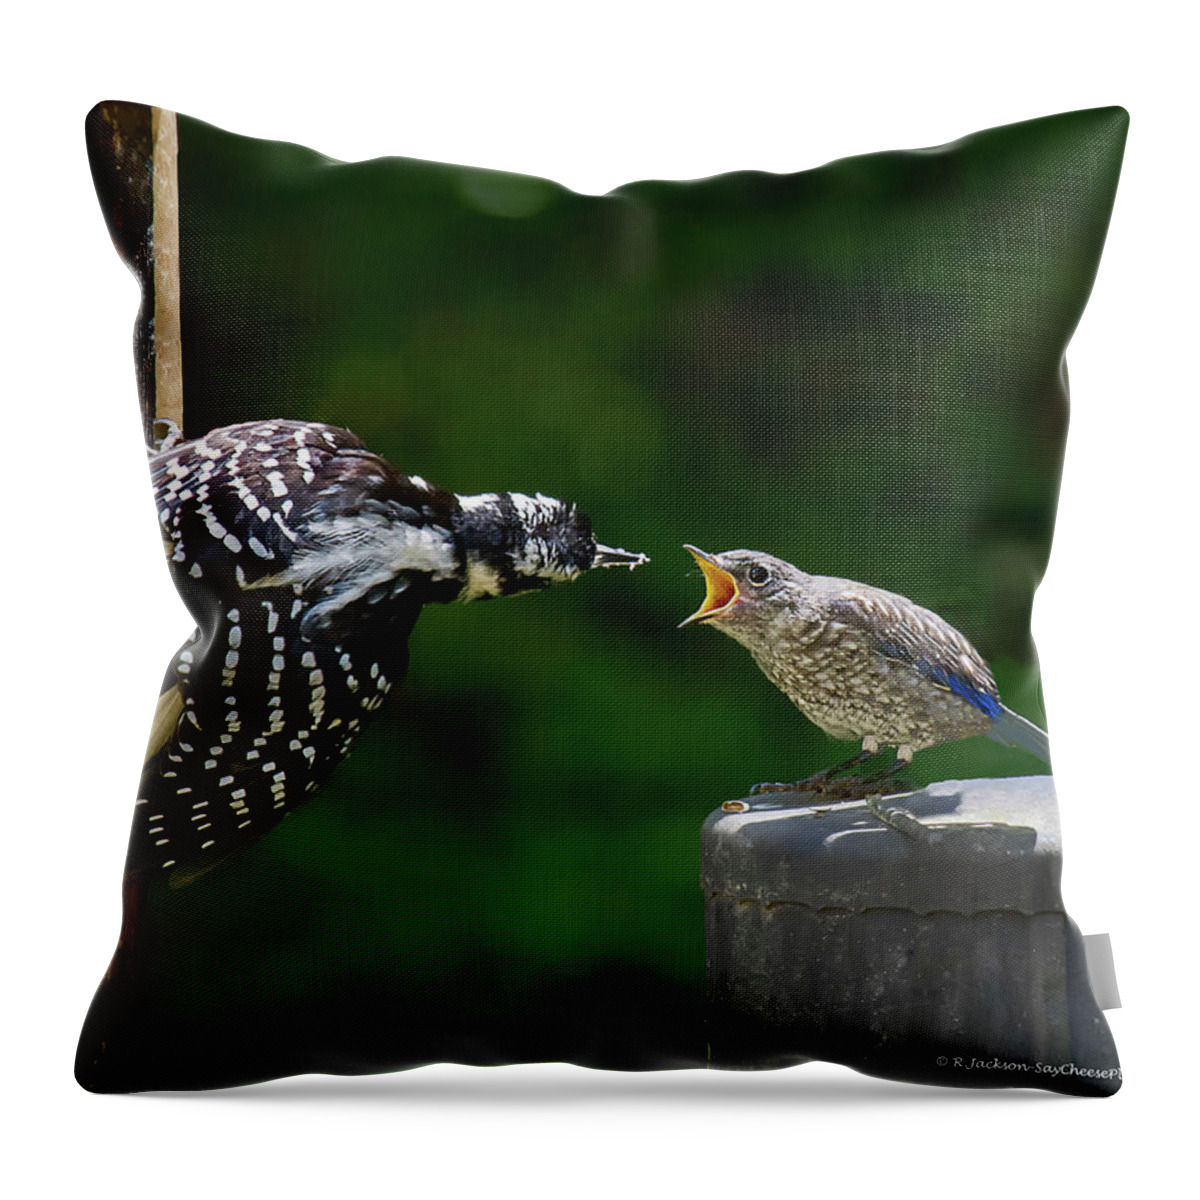 Woodpecker Throw Pillow featuring the photograph Woodpecker Feeding Bluebird by Robert L Jackson